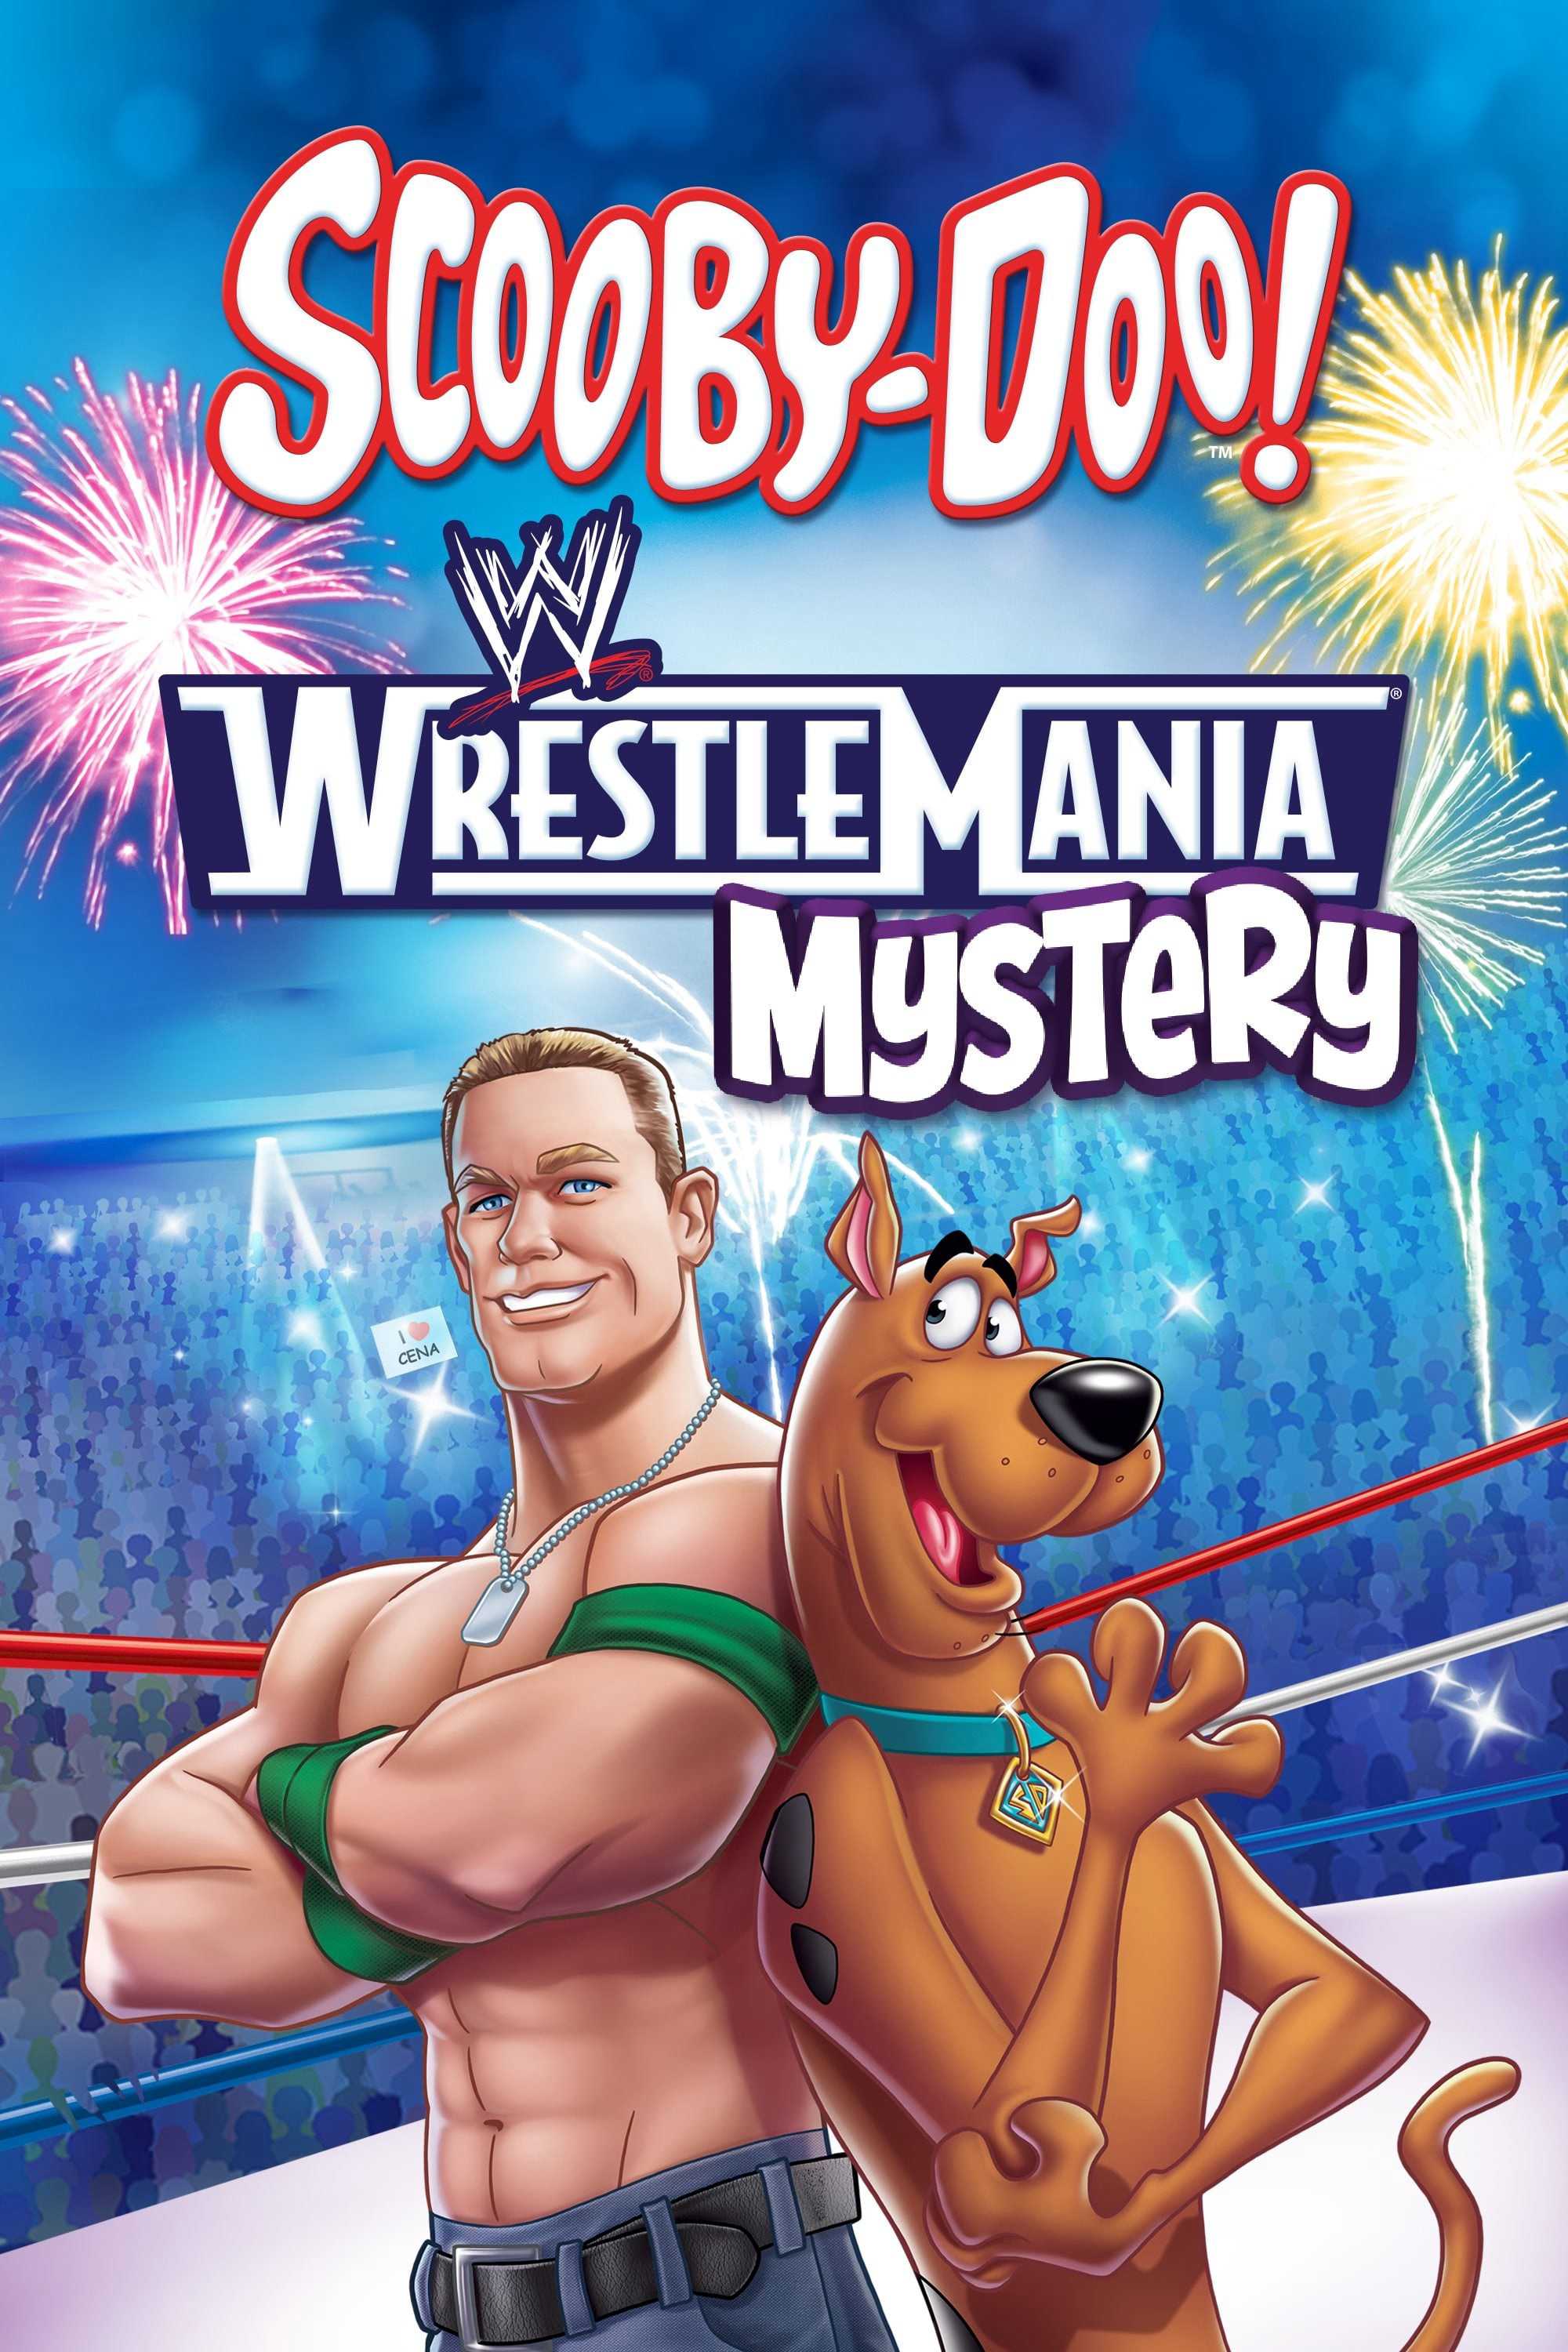 Chú chó scooby doo: bí ẩn wrestlemania - Scooby-doo! wrestlemania mystery